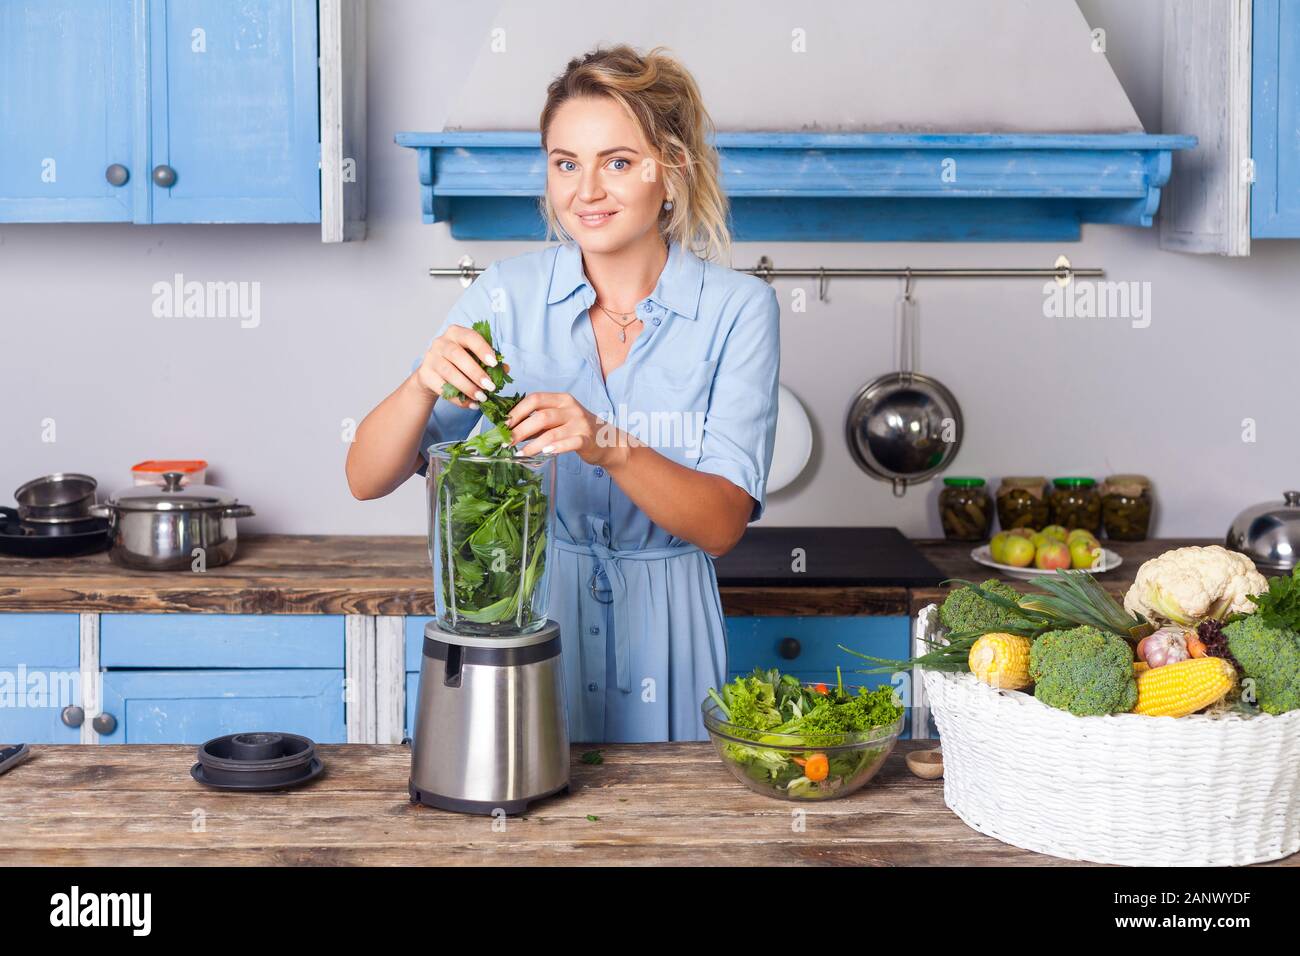 Glückliche Frau Zutaten in Blender gesunden Smoothie zum Frühstück zu machen, kochen Gemüse Zubereitung Salat in der modernen Küche, Rohkost di Stockfoto